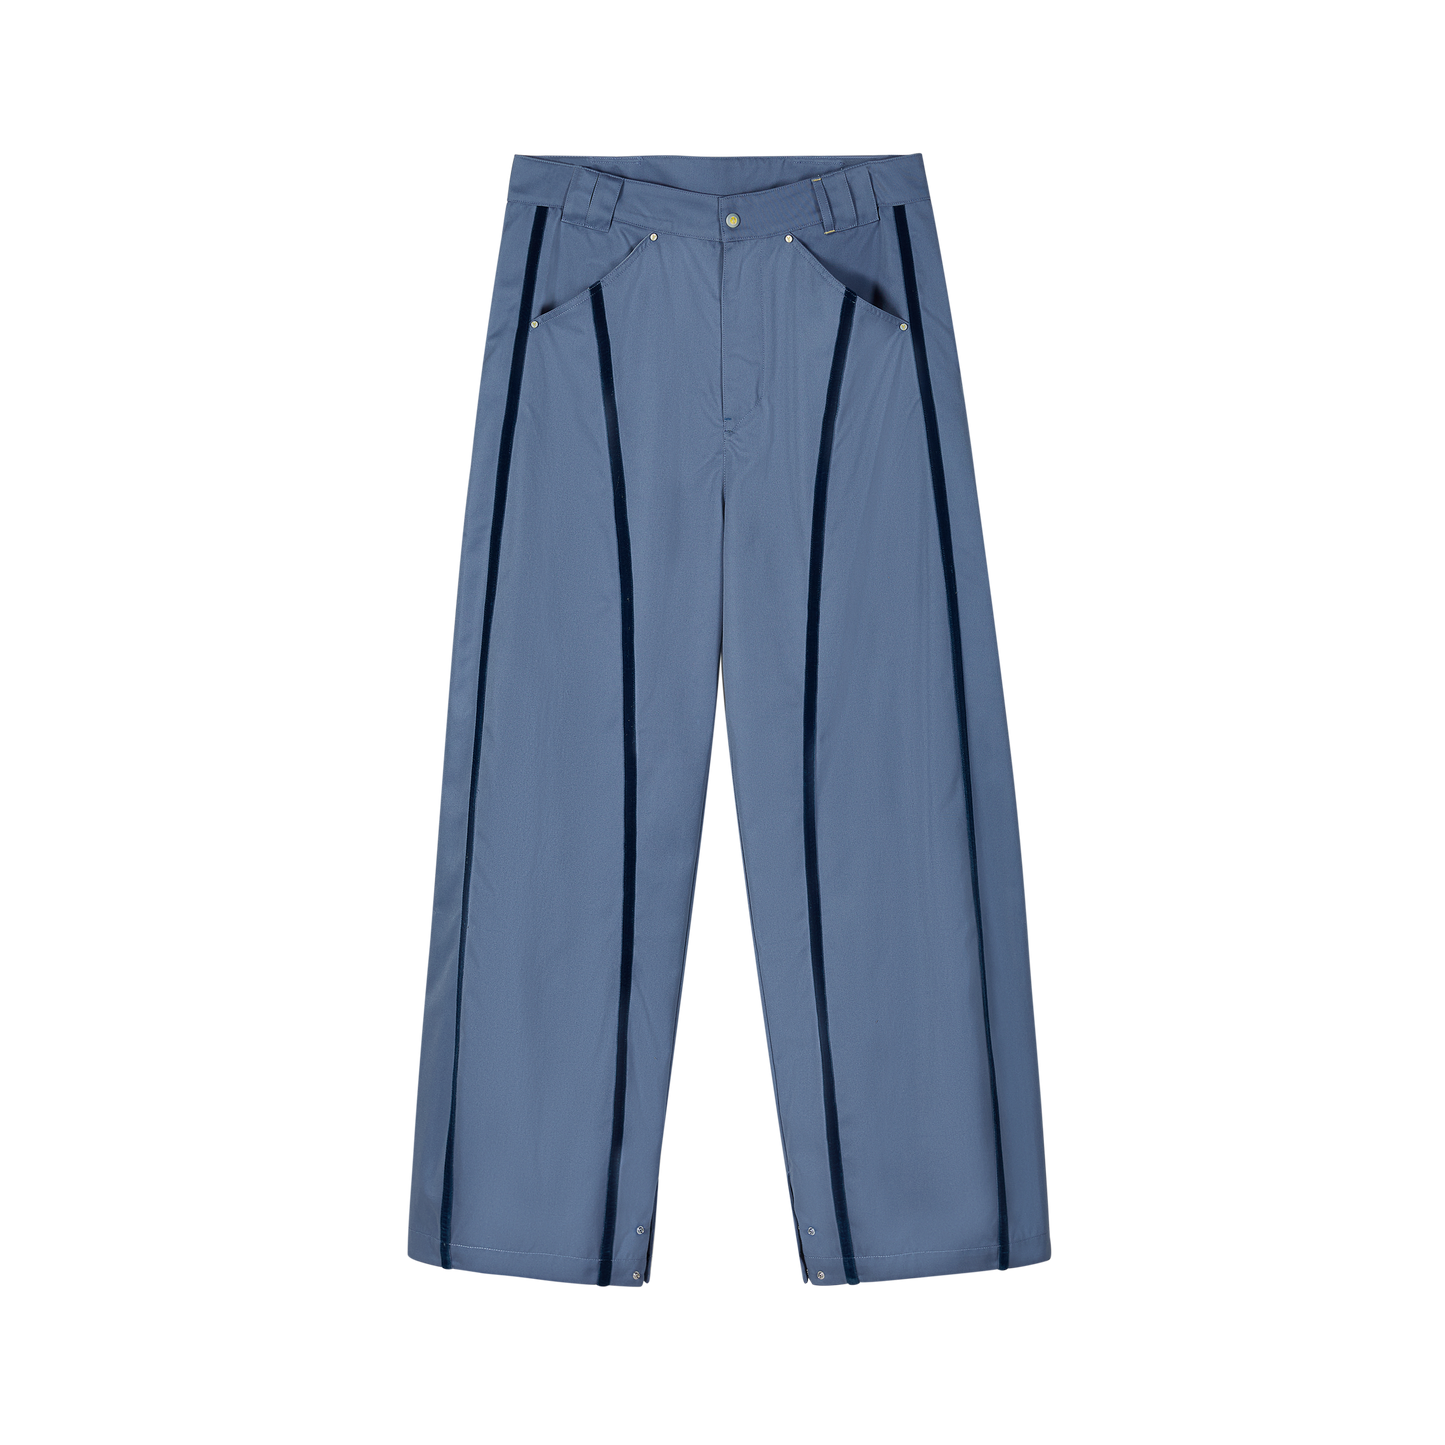 KILLWHY·Buried-line Pants “埋线工作裤”